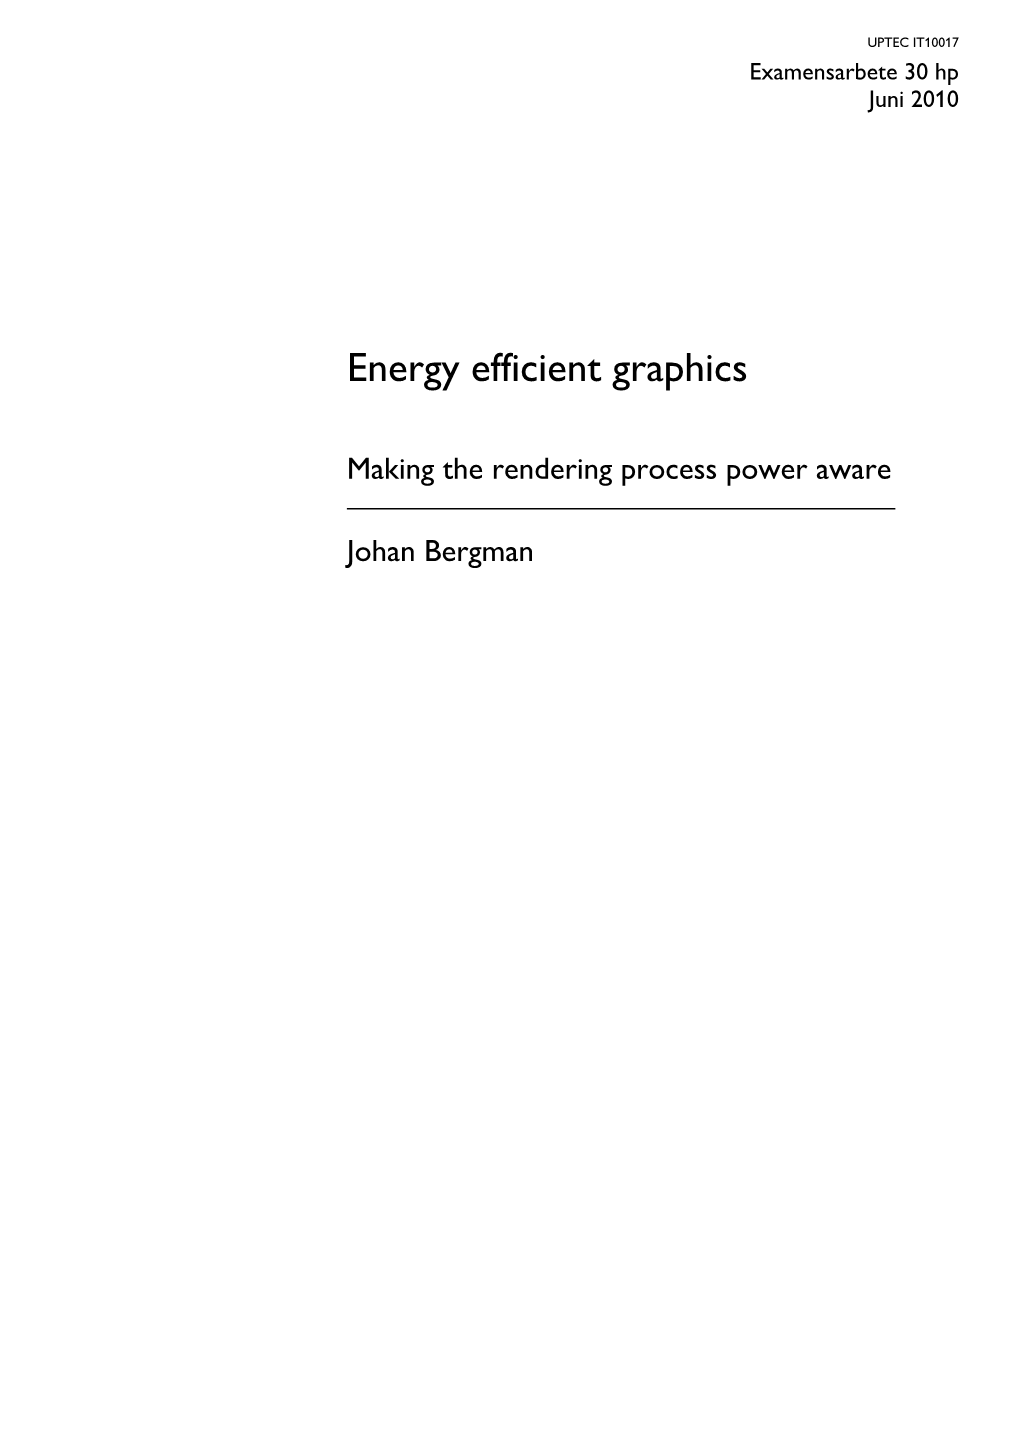 Energy Efficient Graphics